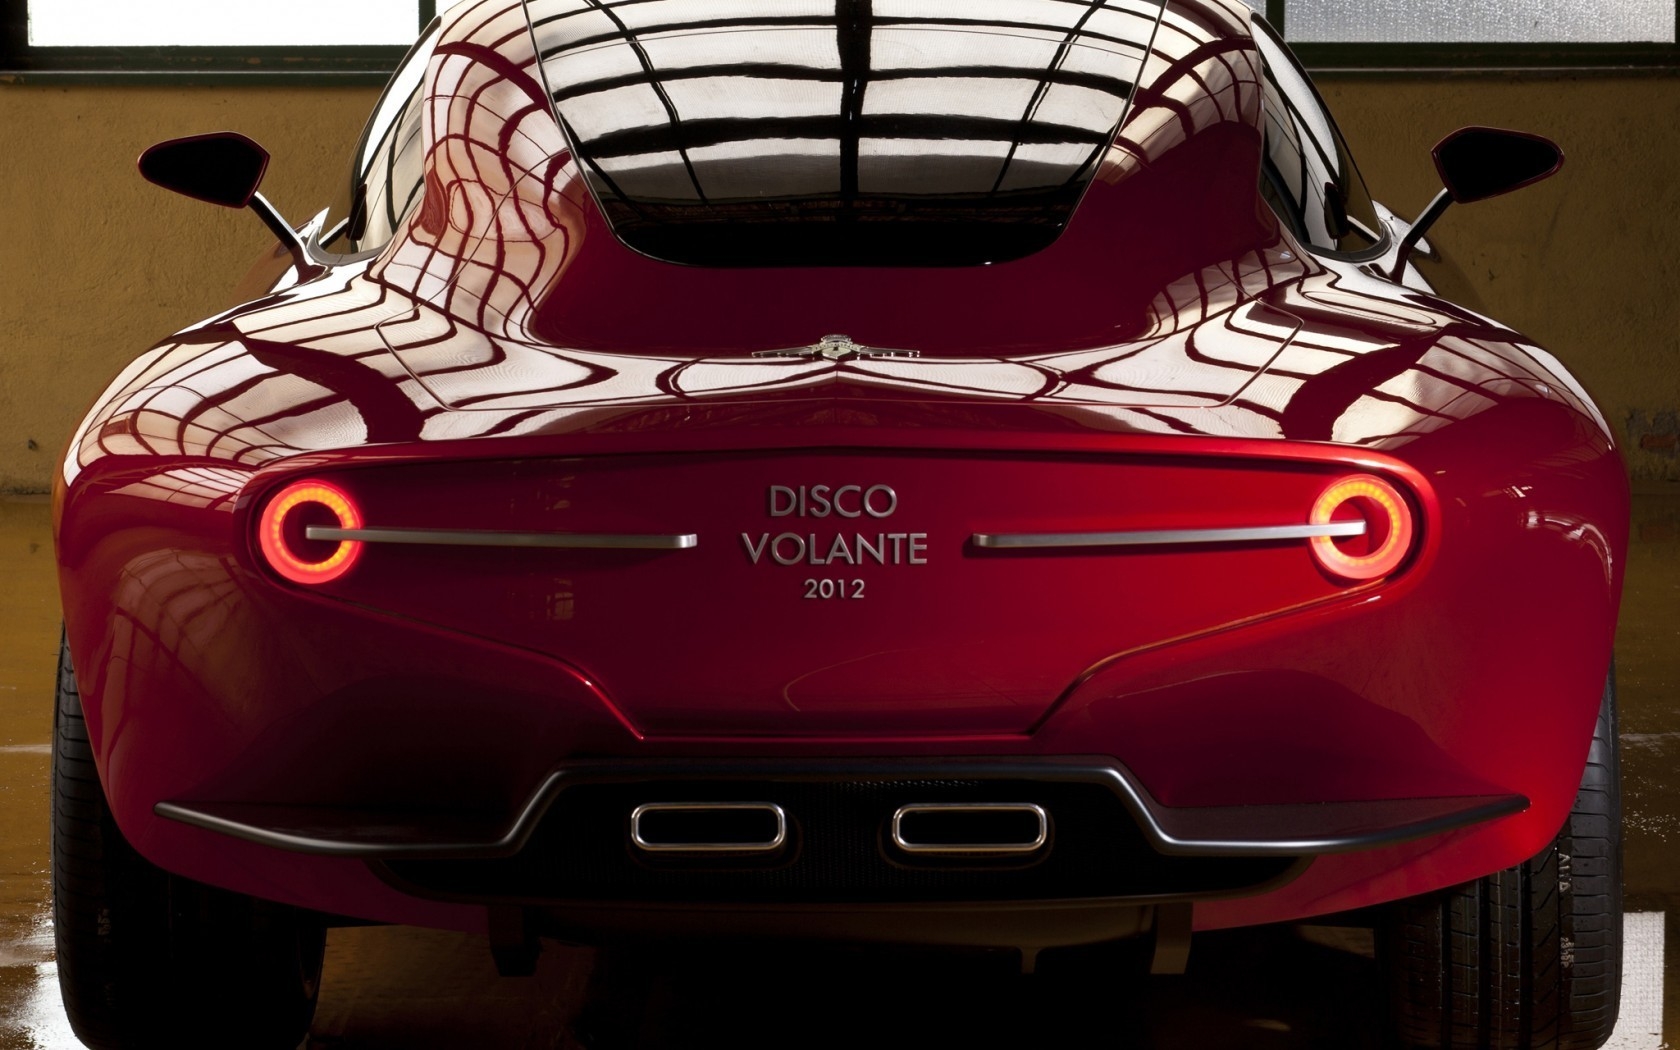 Alfa Romeo Disco Volante 2012 for 1680 x 1050 widescreen resolution